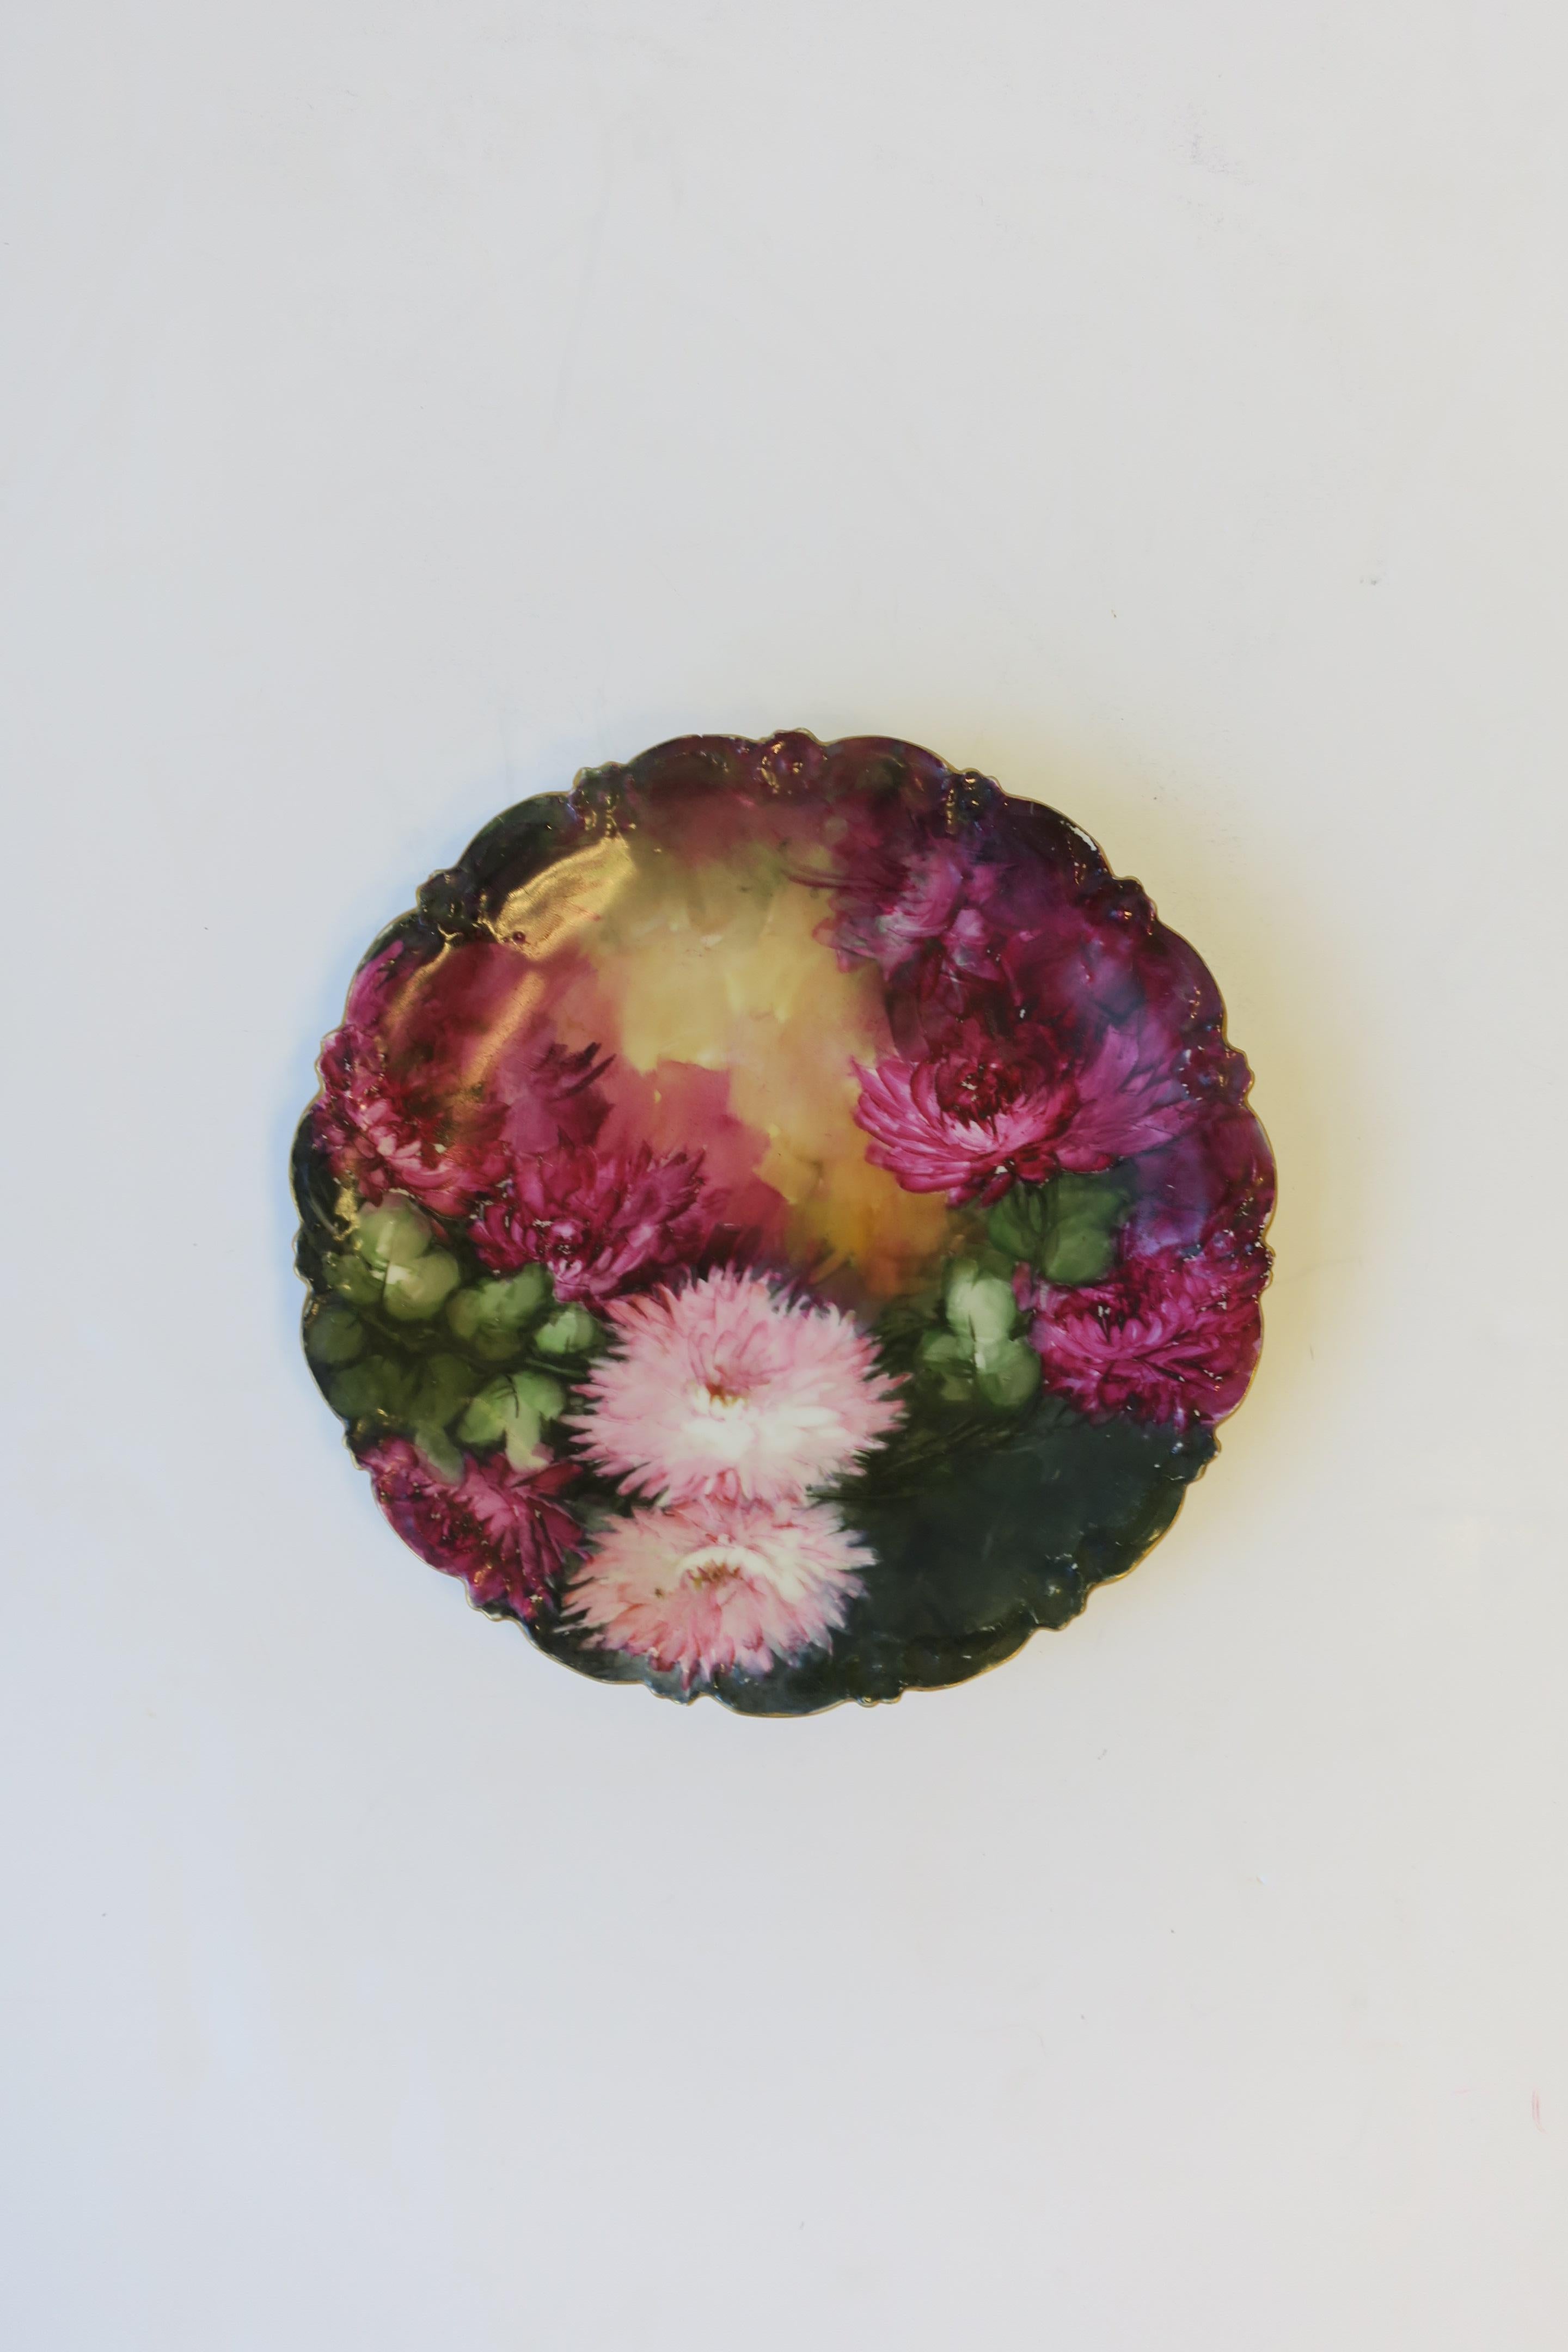 Ein französischer handgemalter Teller des frühen 20. Jahrhunderts von T & V, Limoges, Frankreich. Das Design der Teller besteht aus schönen fuchsia-violetten und rosafarbenen Mutterblumen und grünen Blättern, die mit einem vergoldeten Wellenrand